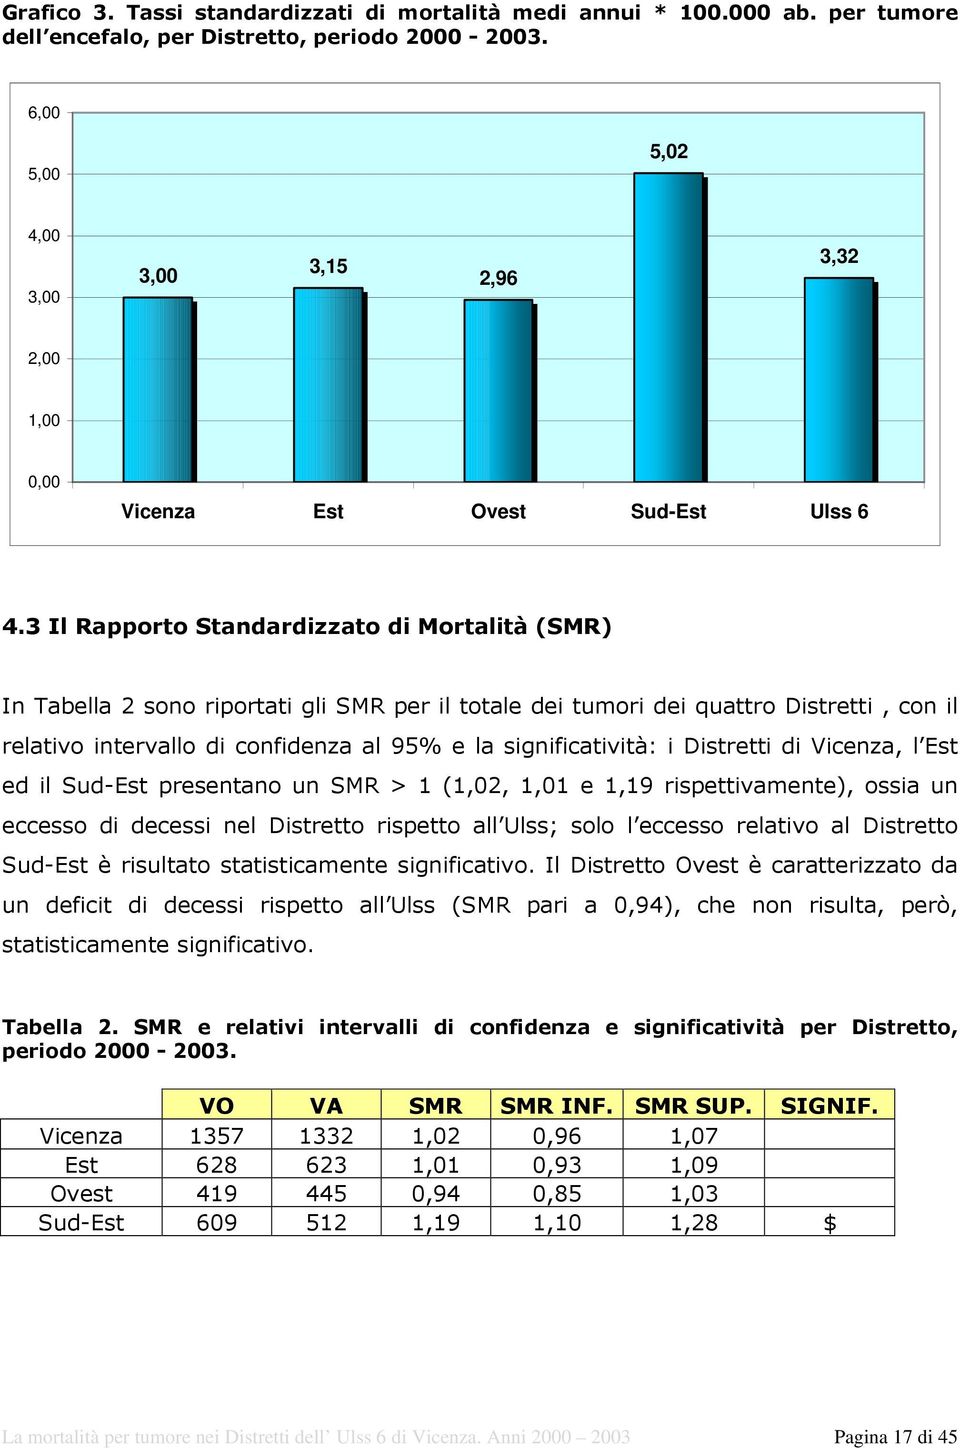 3 Il Rapporto Standardizzato di Mortalità (SMR) In Tabella 2 sono riportati gli SMR per il totale dei tumori dei quattro Distretti, con il relativo intervallo di confidenza al 95% e la